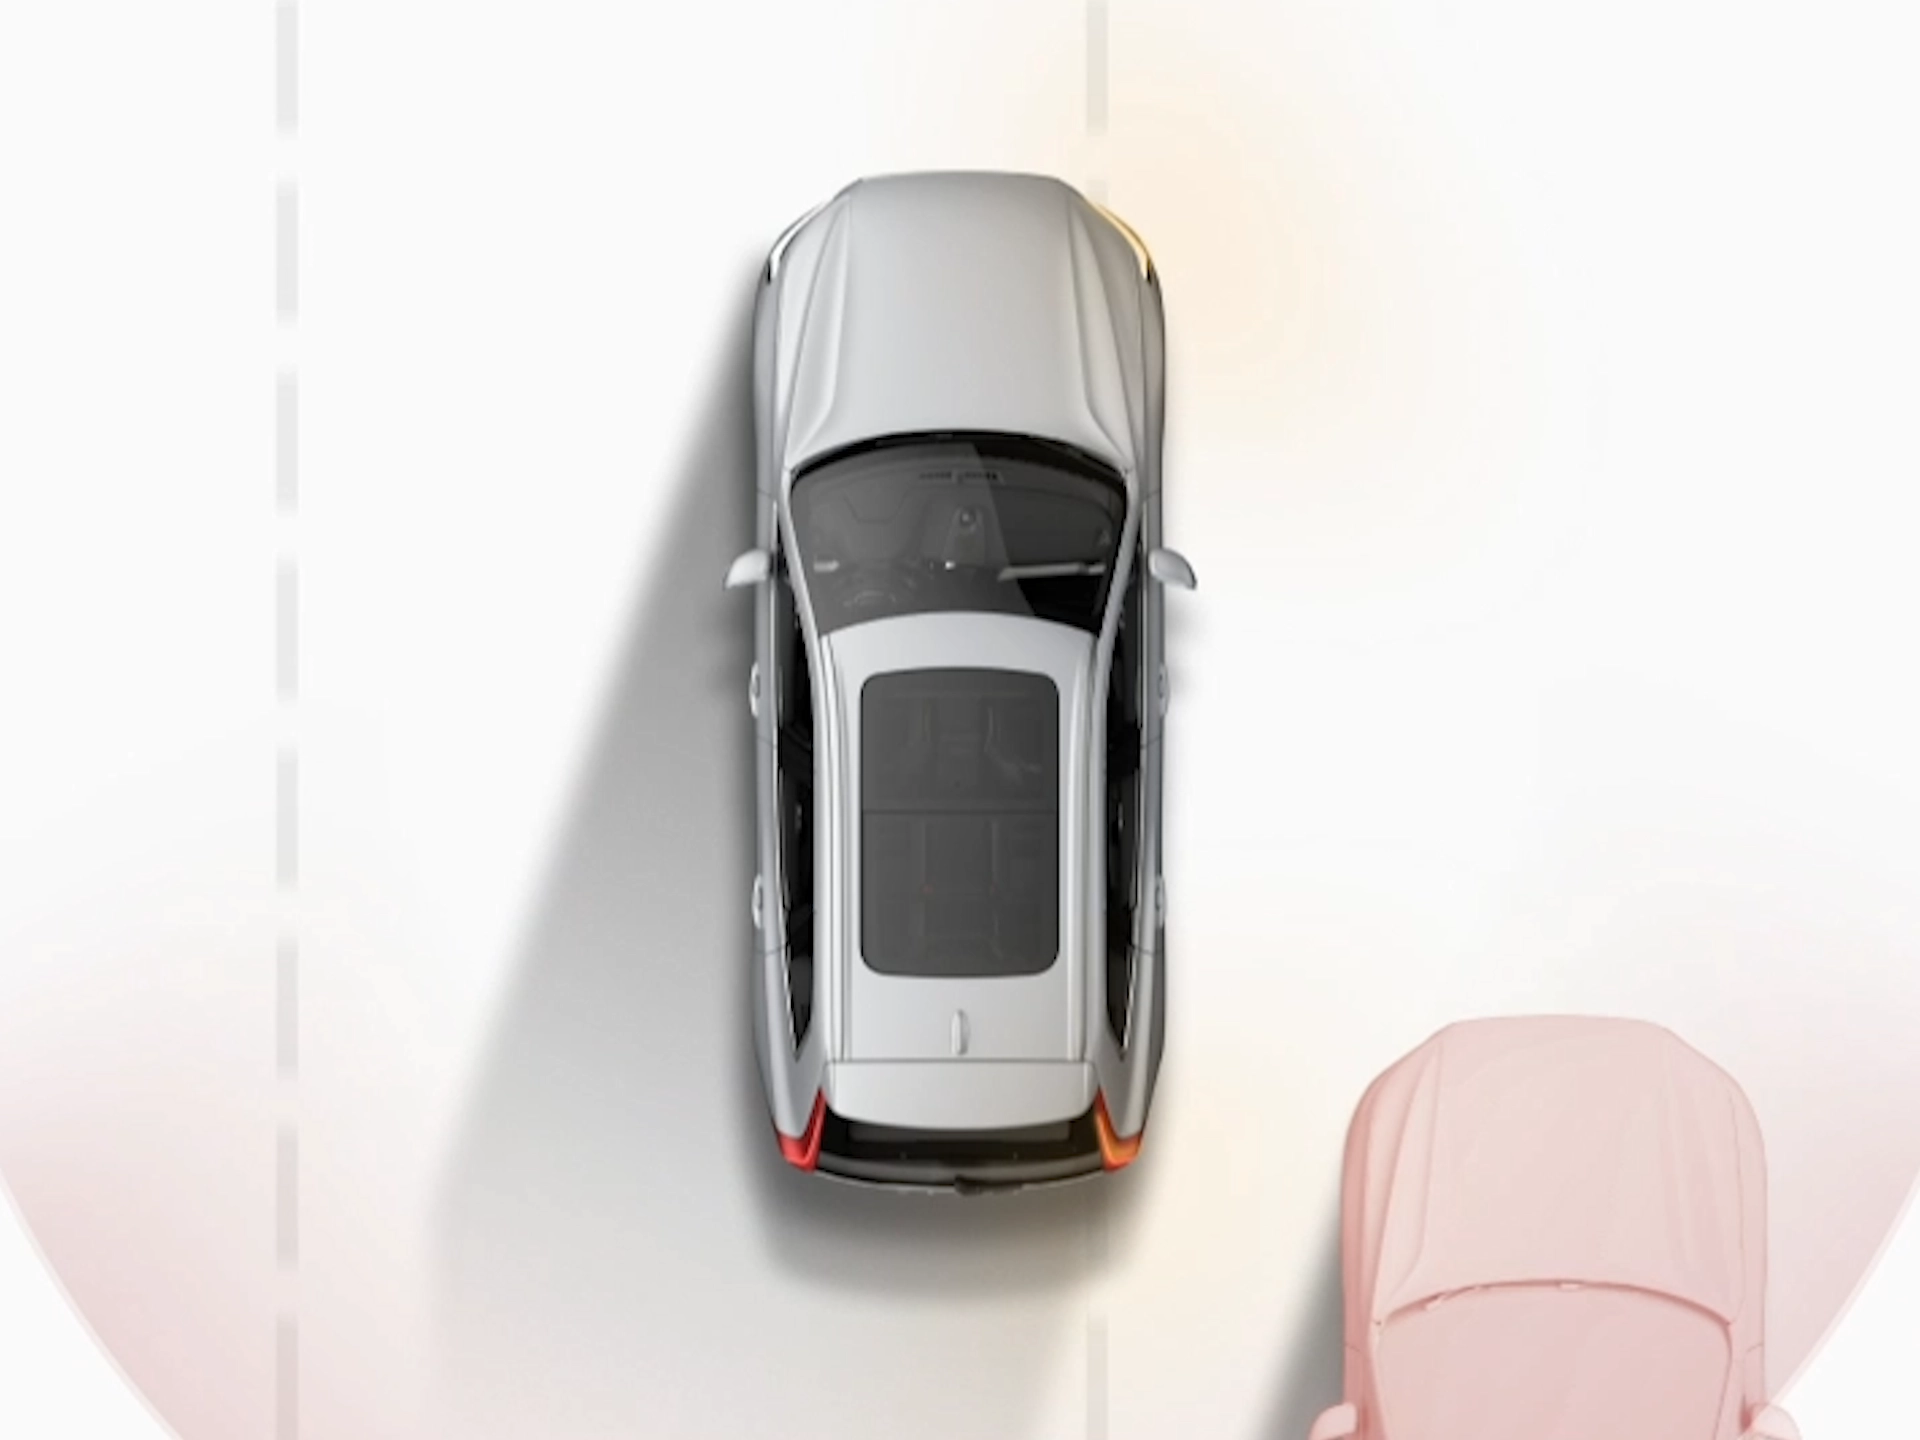 Imagen ilustrada de un vehículo Volvo desde arriba circulando junto a otros vehículos.